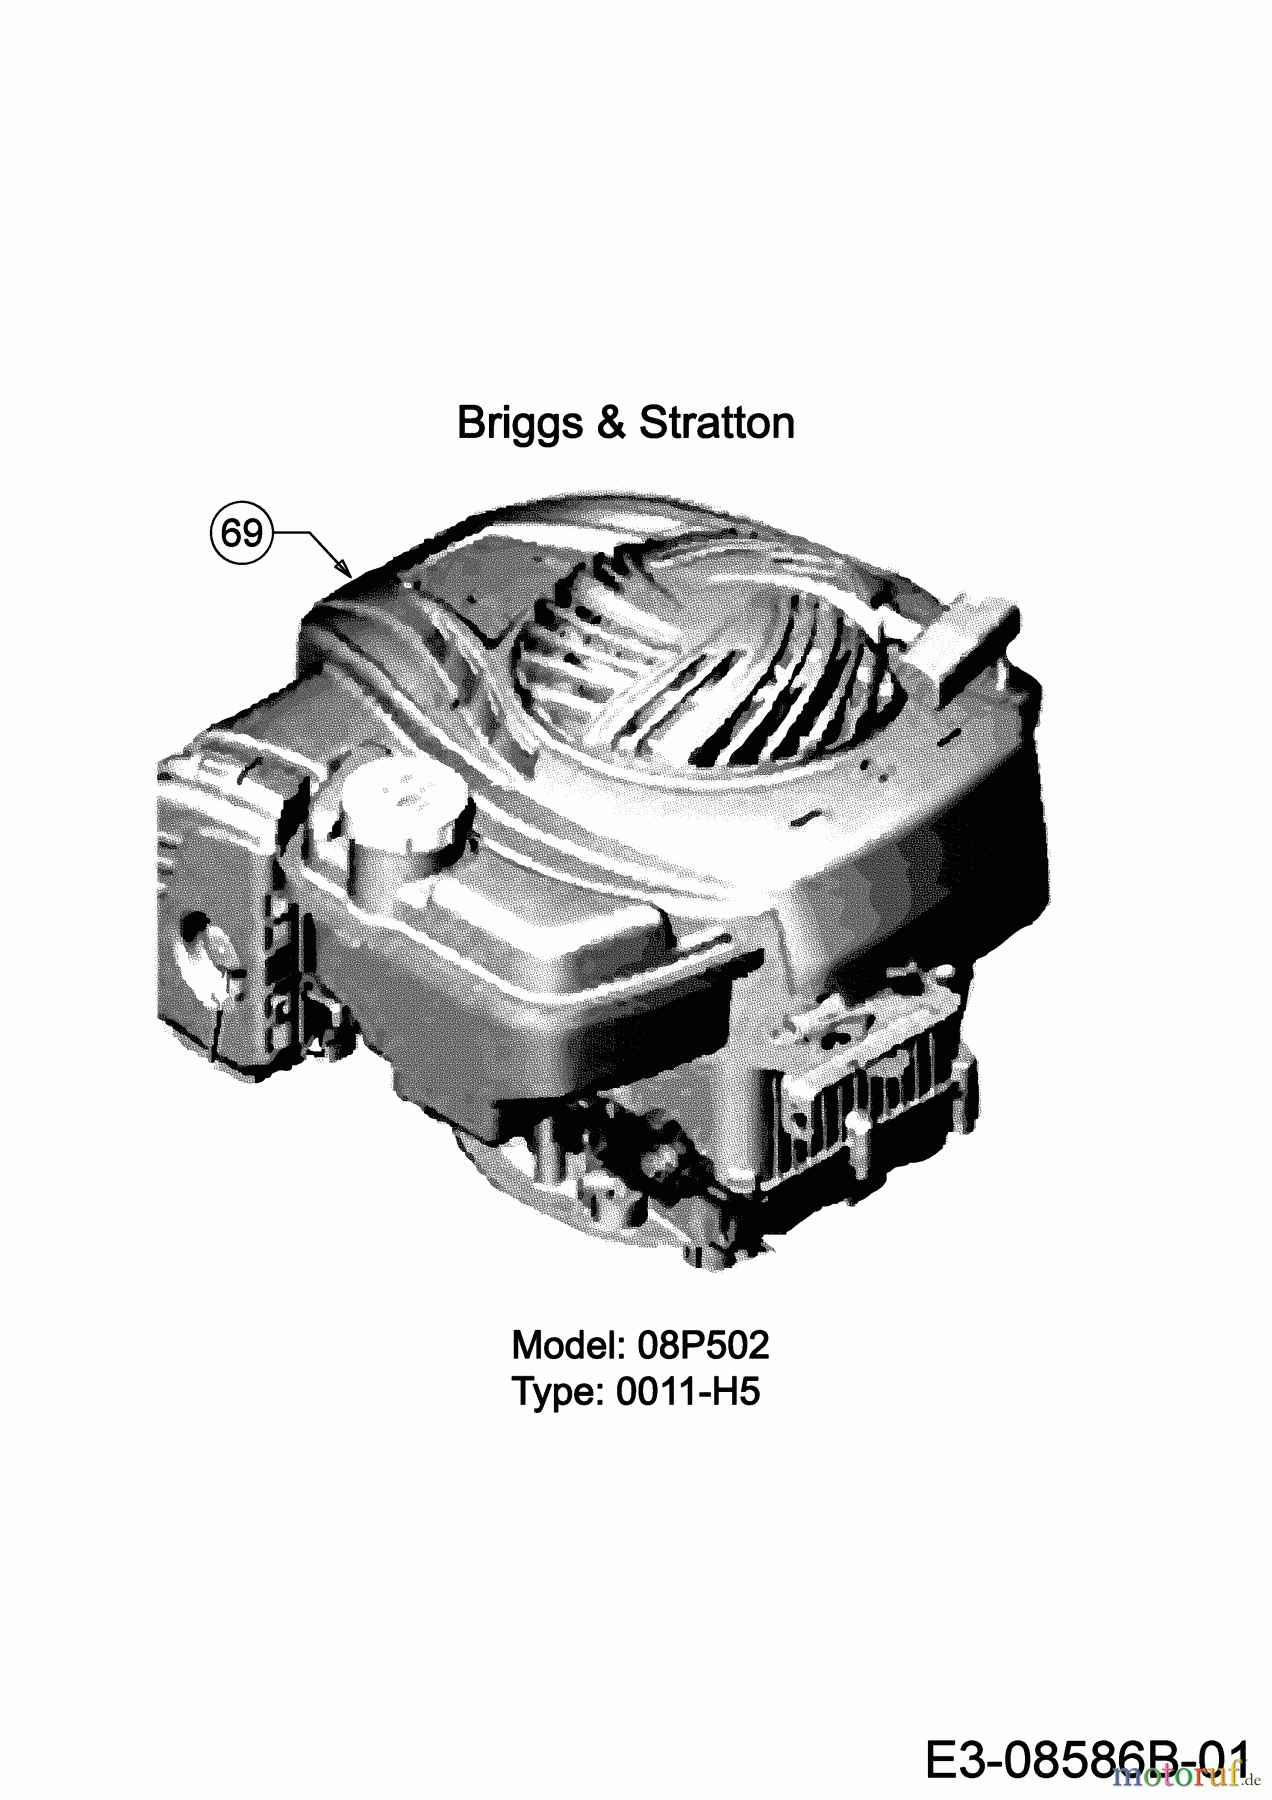  Black-Line Petrol mower BL 3546 11B-TE5B683 (2020) Engine Briggs & Stratton